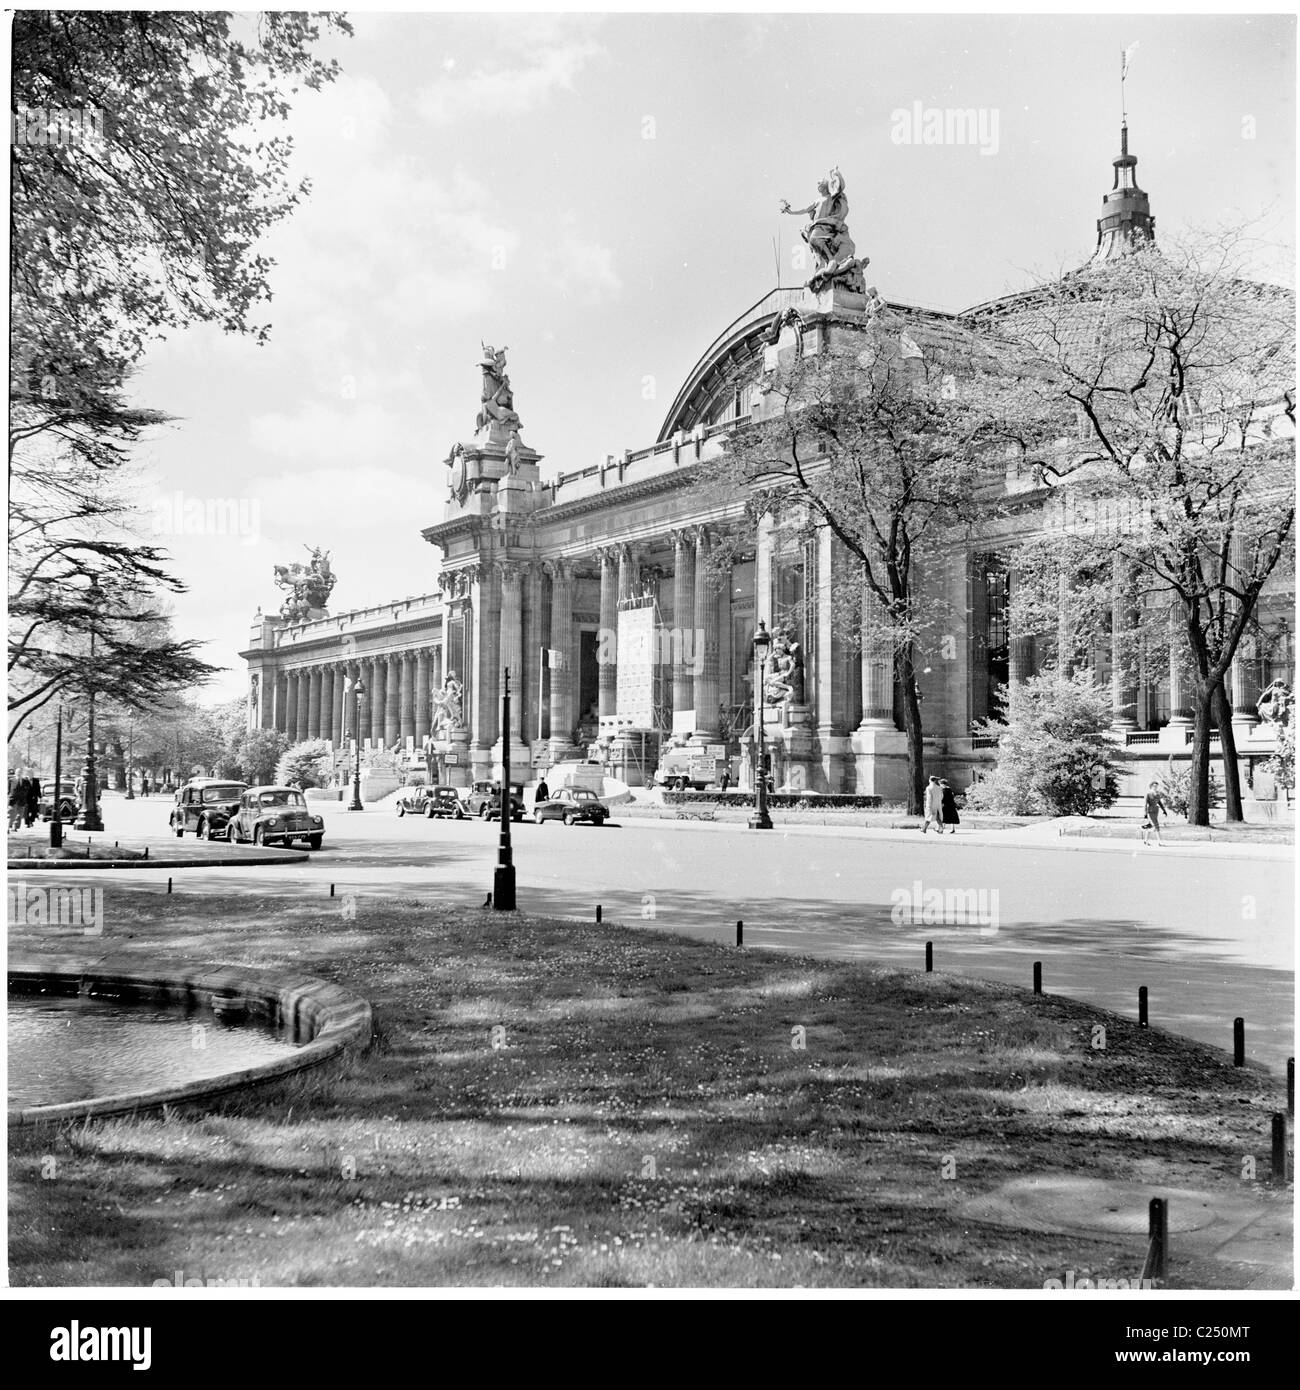 1950s, frente al exterior del Grand Palais des Champs-Elysees, un edificio histórico y sala de exposiciones en la Avenue Winston-Churchill, París, Francia. Foto de stock